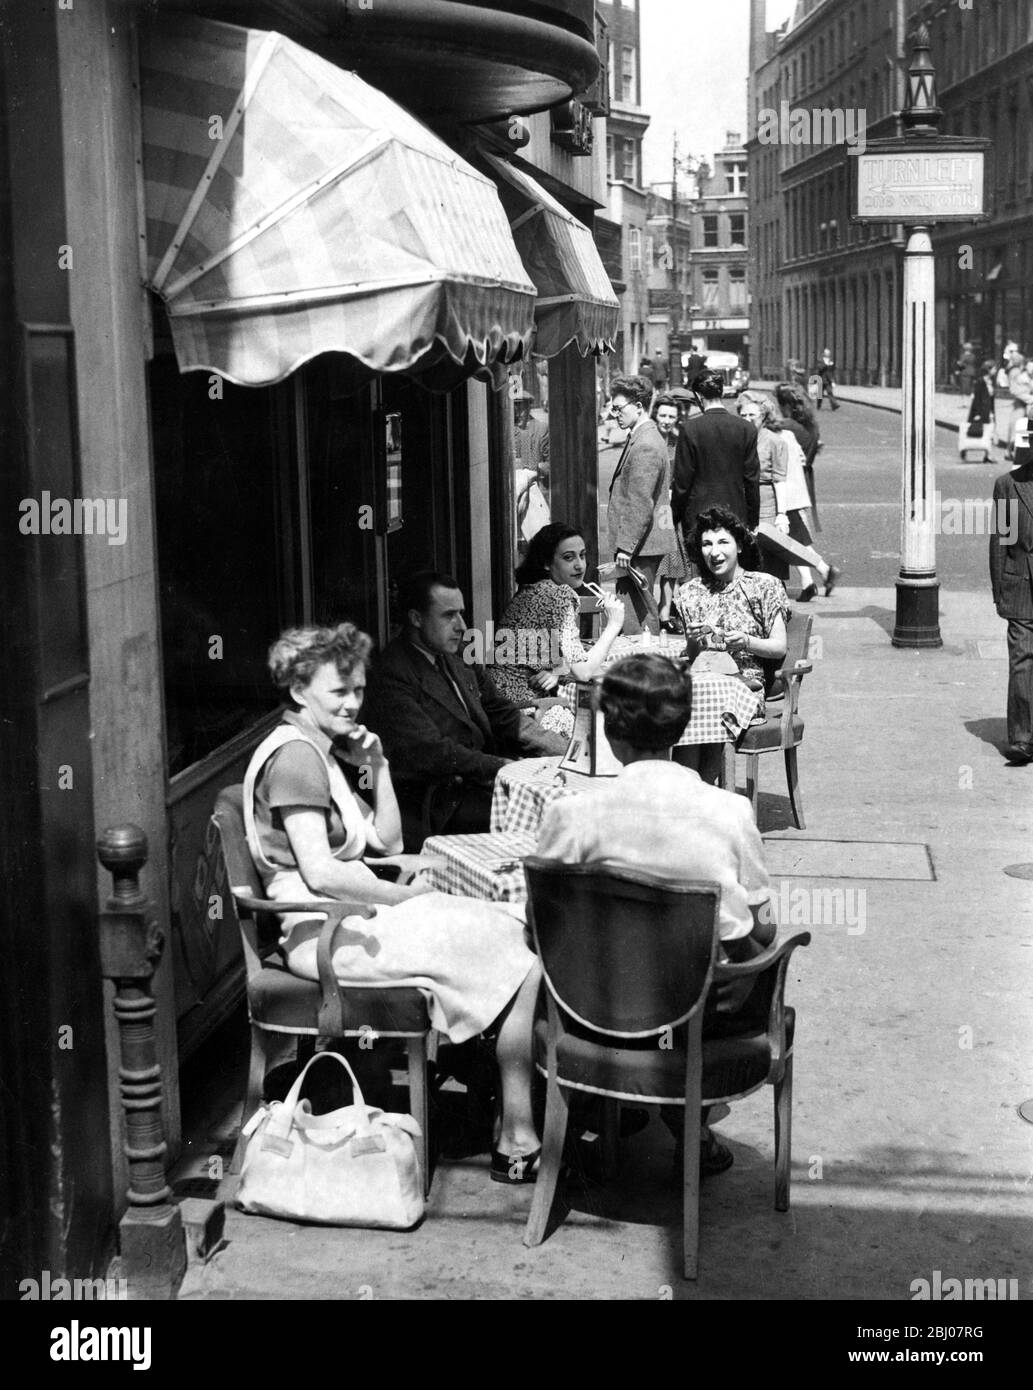 Besucher in London genießen einen Snack und ein Getränk im wahrhaft kontinentalen Stil im Open-Air-Café Oxford Street; die riesige Markise bietet etwas kühlenden Schutz vor der Sonne, London, England. - 31. Mai 1947 Stockfoto